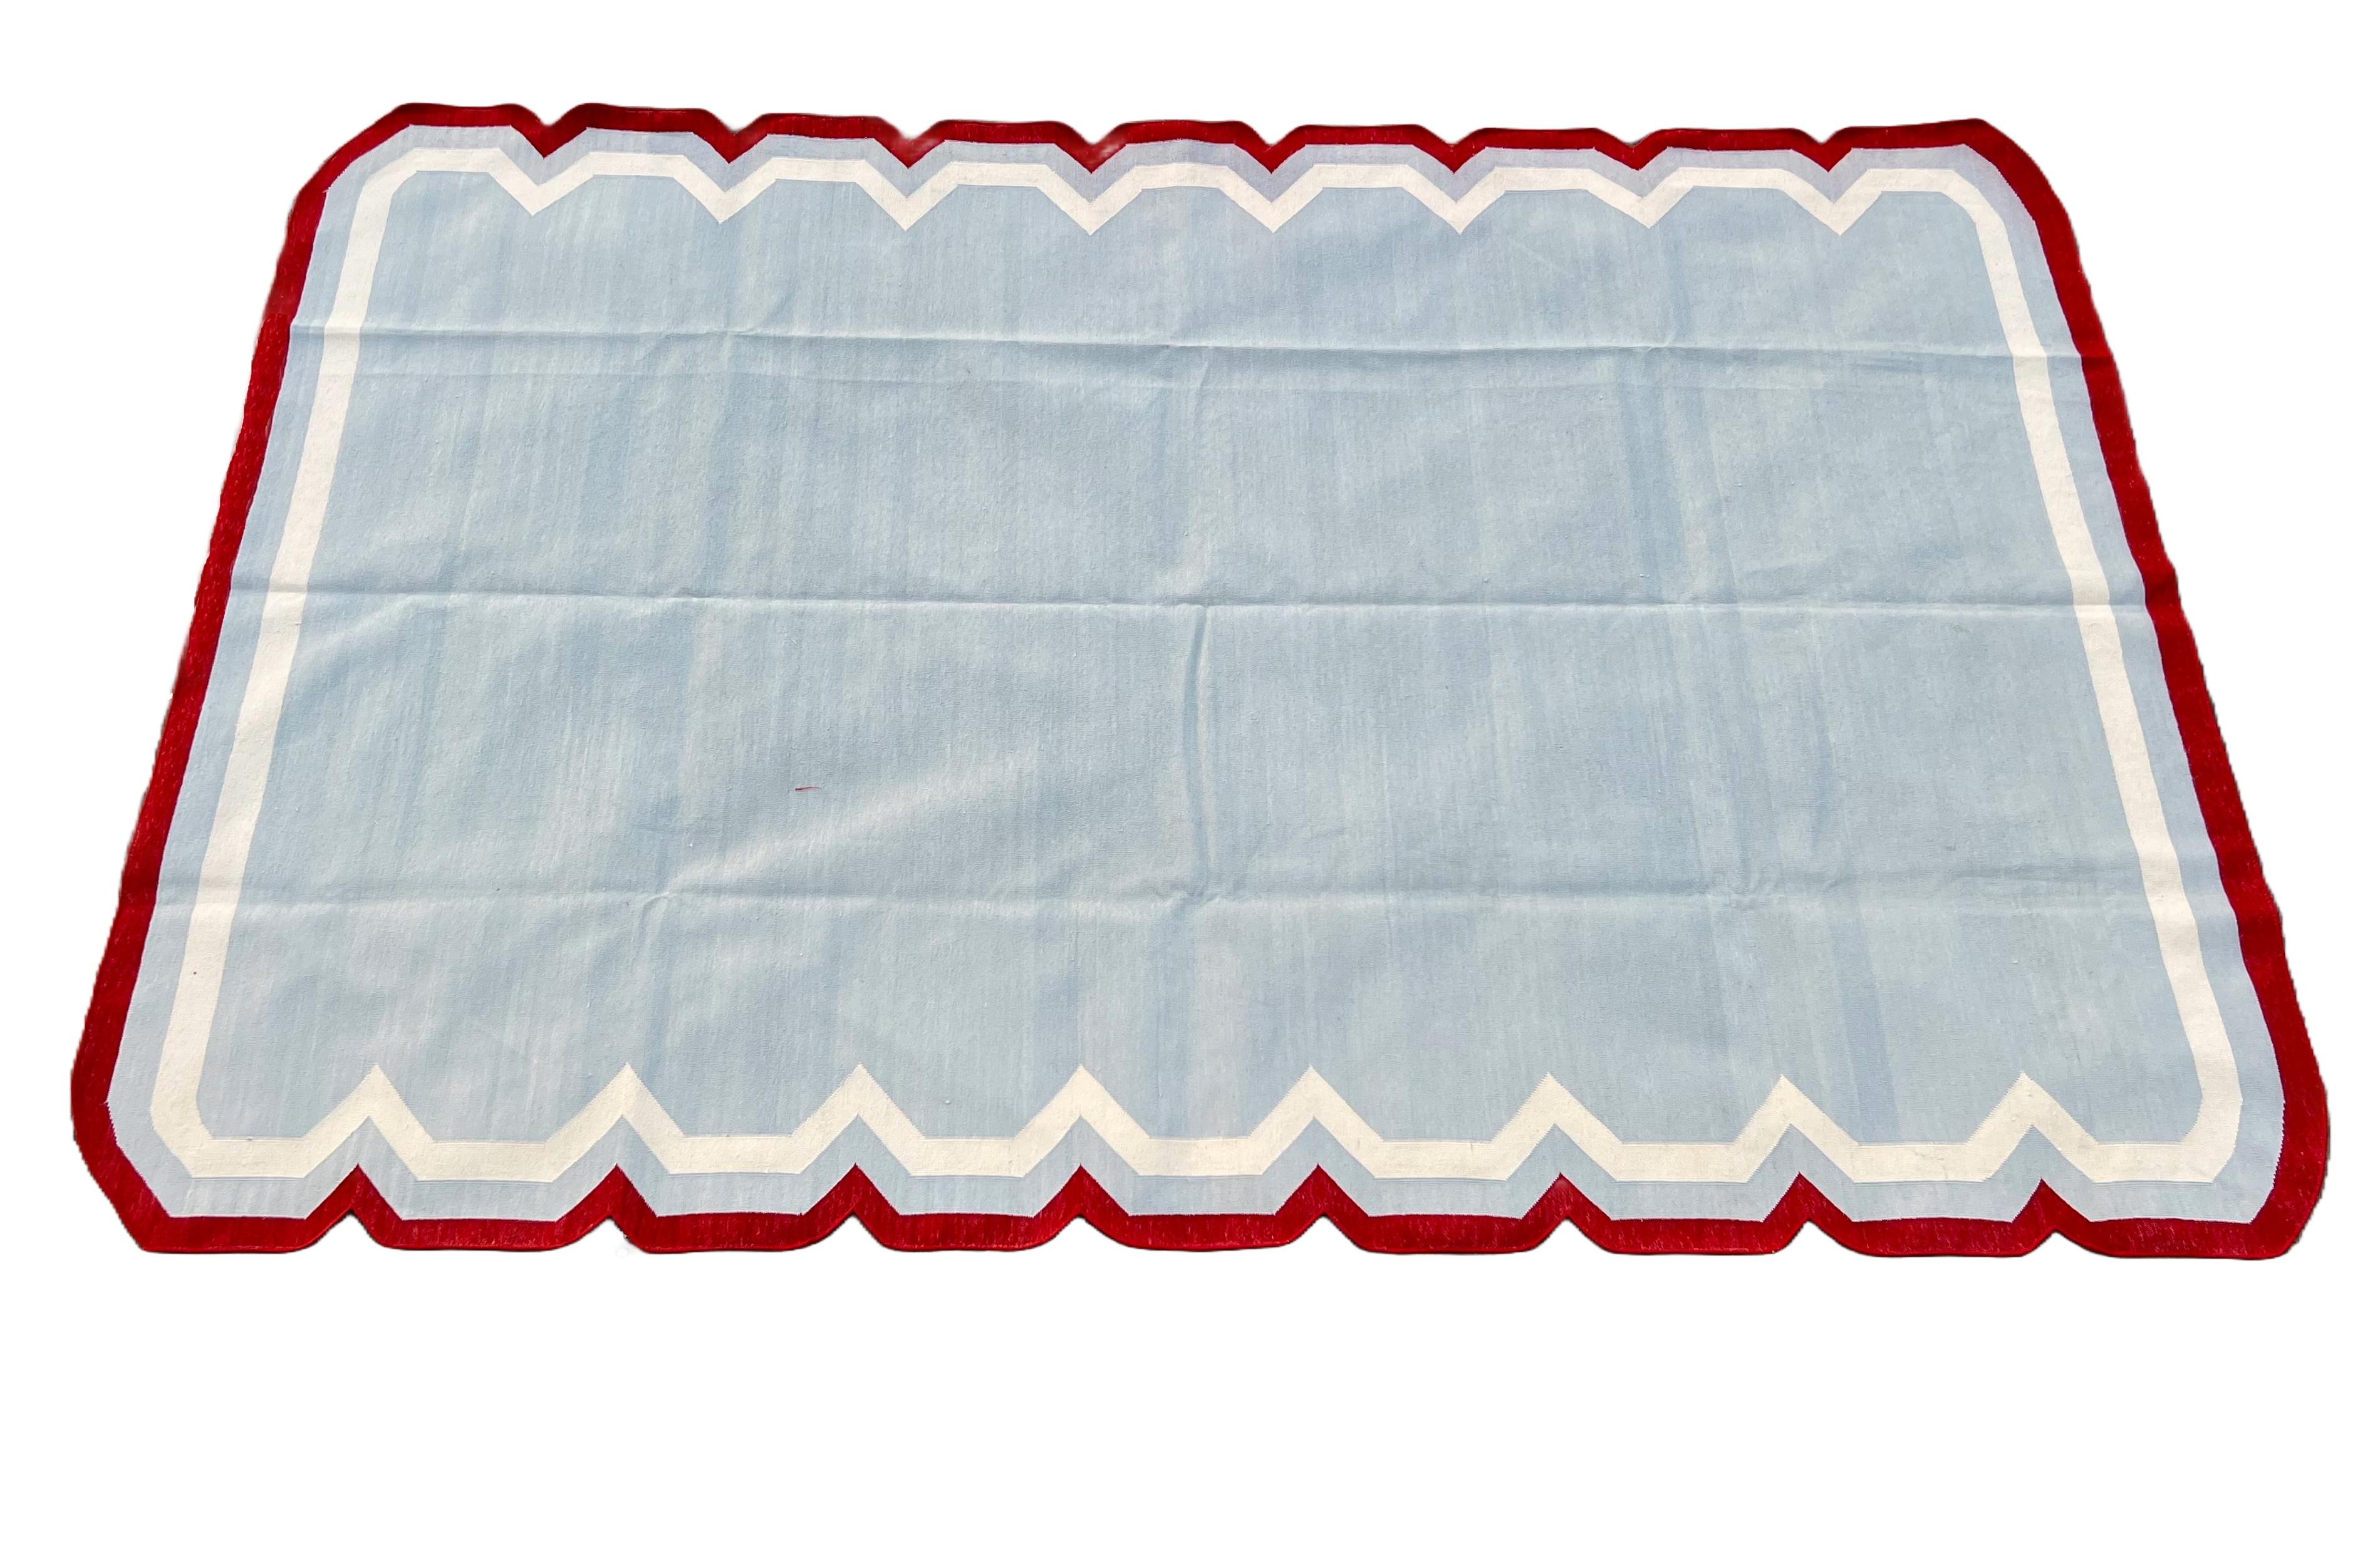 Vegetabil gefärbte Baumwolle Himmelblau, Creme und Terrakotta Rot Gestreifter Indischer Dhurrie Teppich - 5'x8' (150x240cm) 

Diese speziellen flachgewebten Dhurries werden aus 15-fachem Garn aus 100% Baumwolle handgewebt. Aufgrund der speziellen